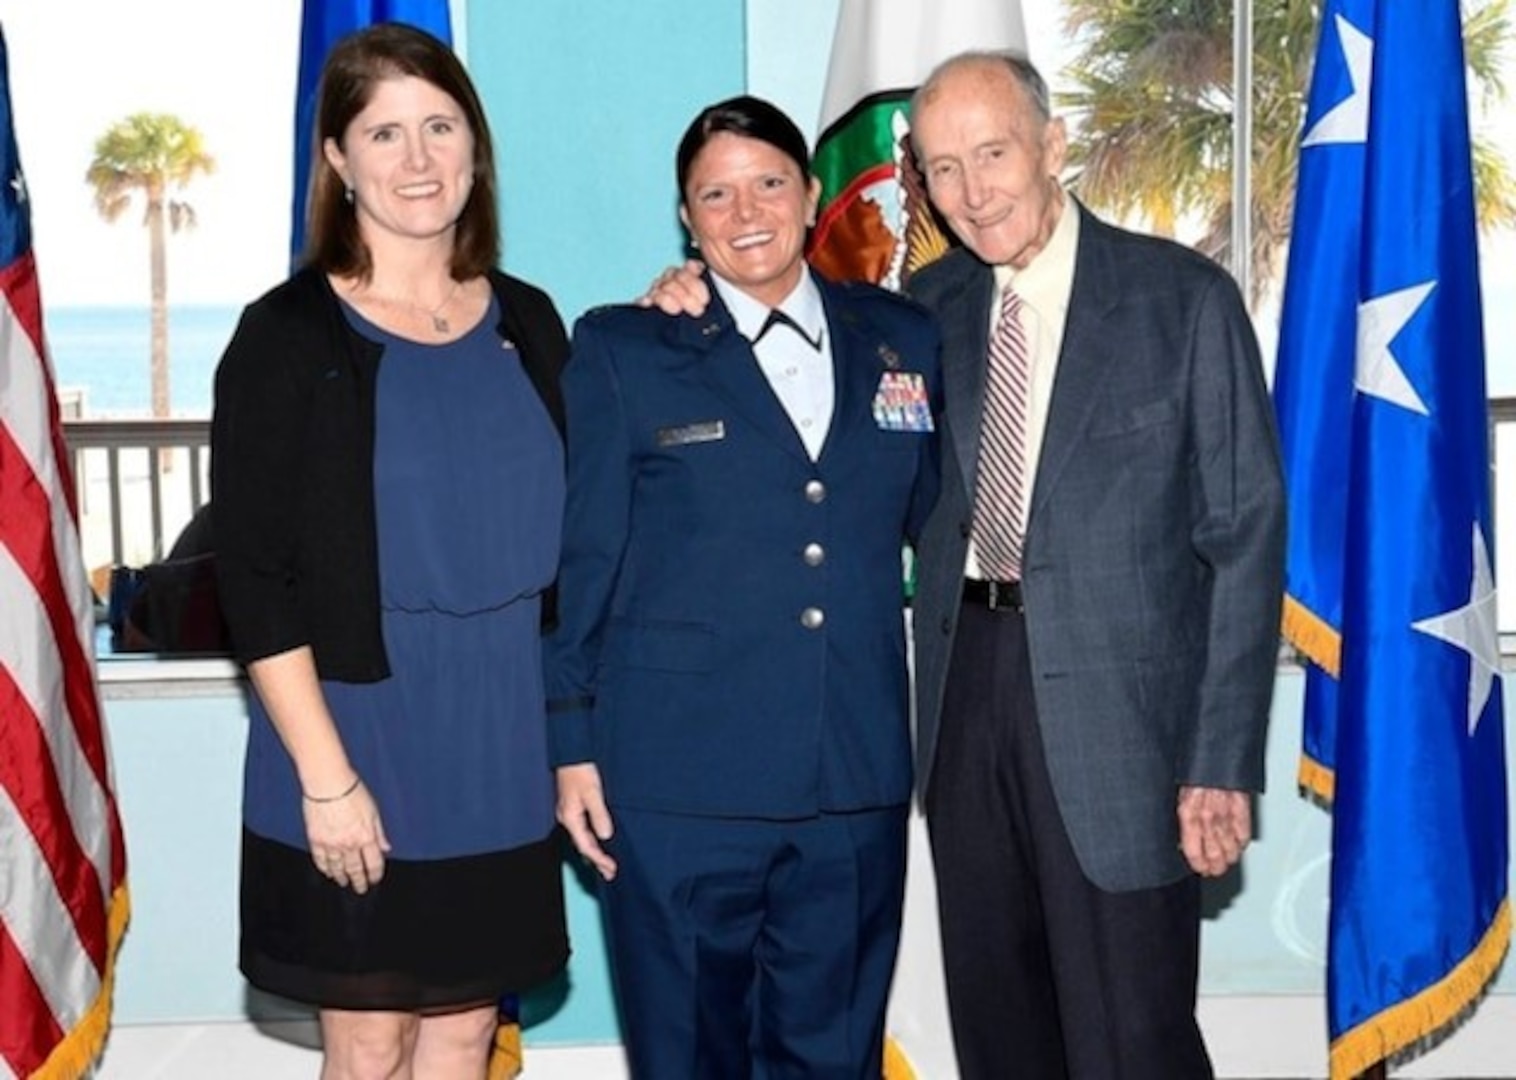 Jennifer Kennedy's promotion to Lt Col.